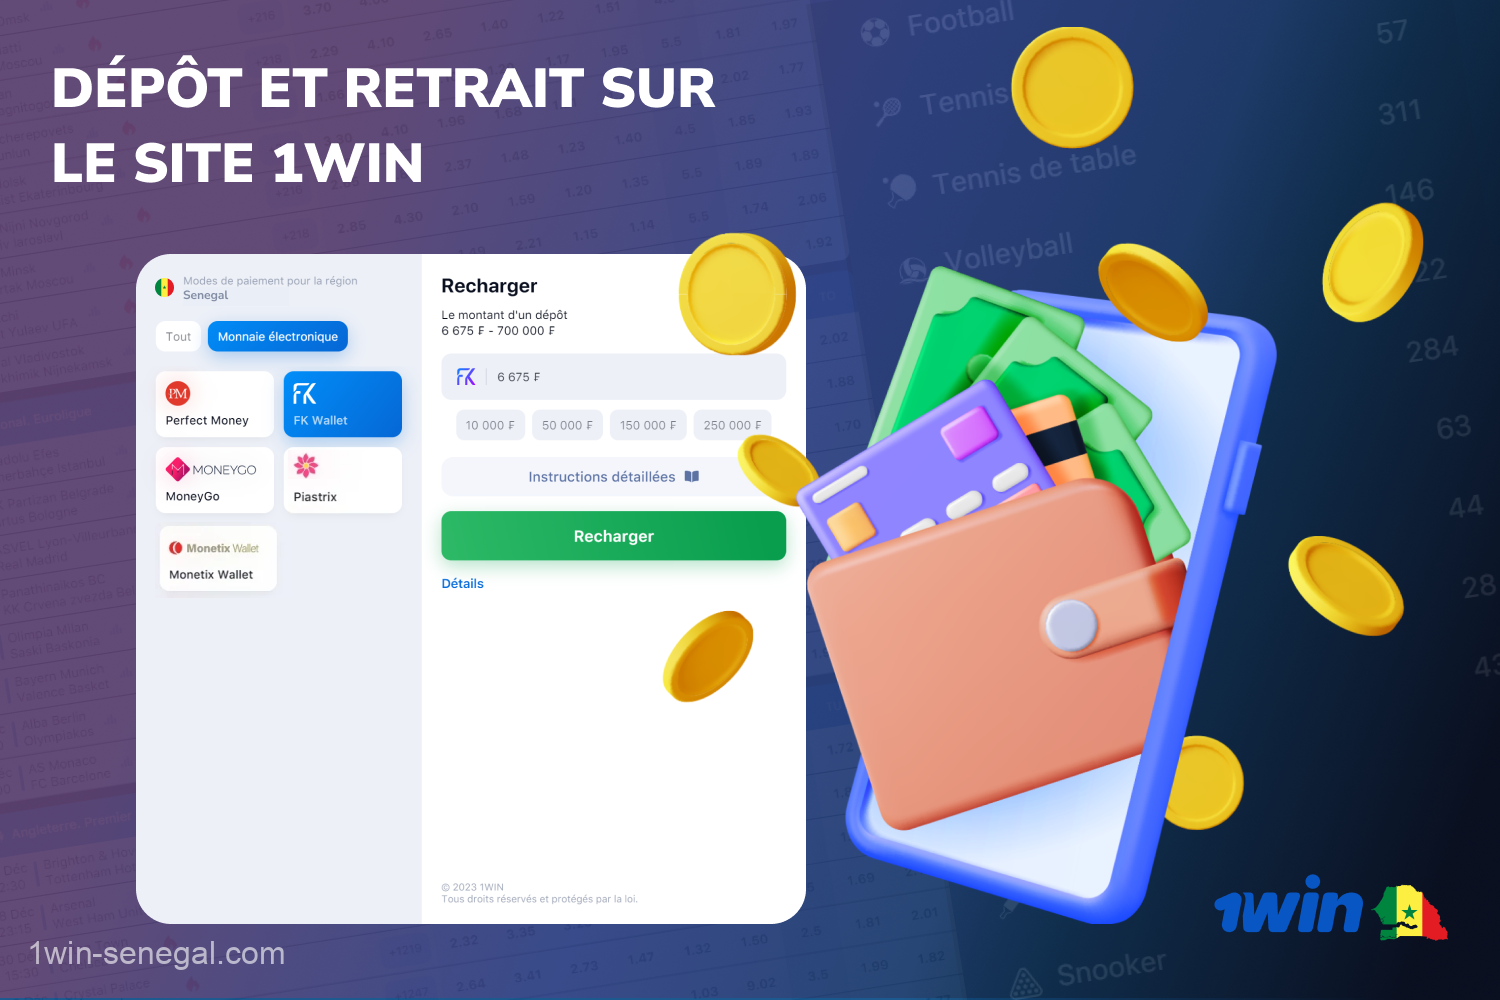 Les joueurs au Sénégal peuvent déposer et retirer des fonds sur 1win via plusieurs systèmes de paiement rapides et fiables